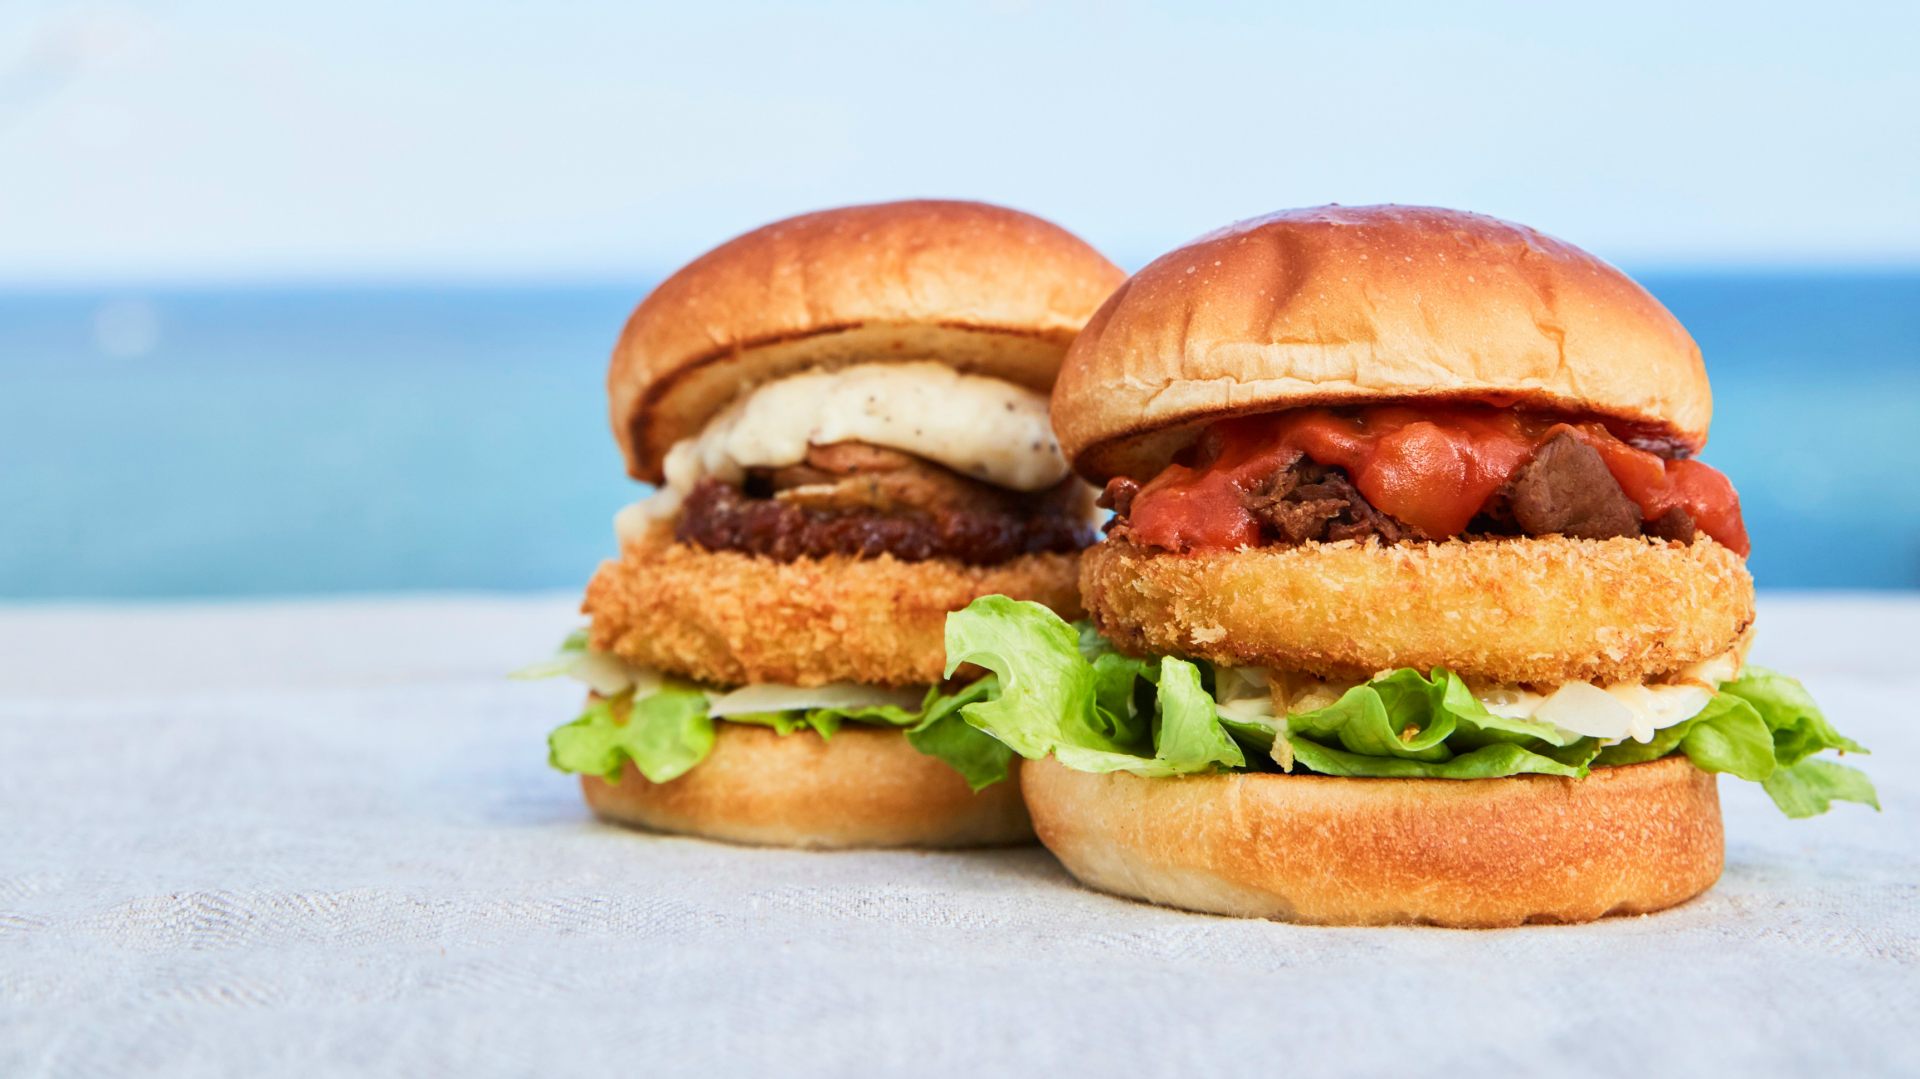 "Awaji Island Onion Beef Burger” and "Awaji Island Onion Gratin Burger"